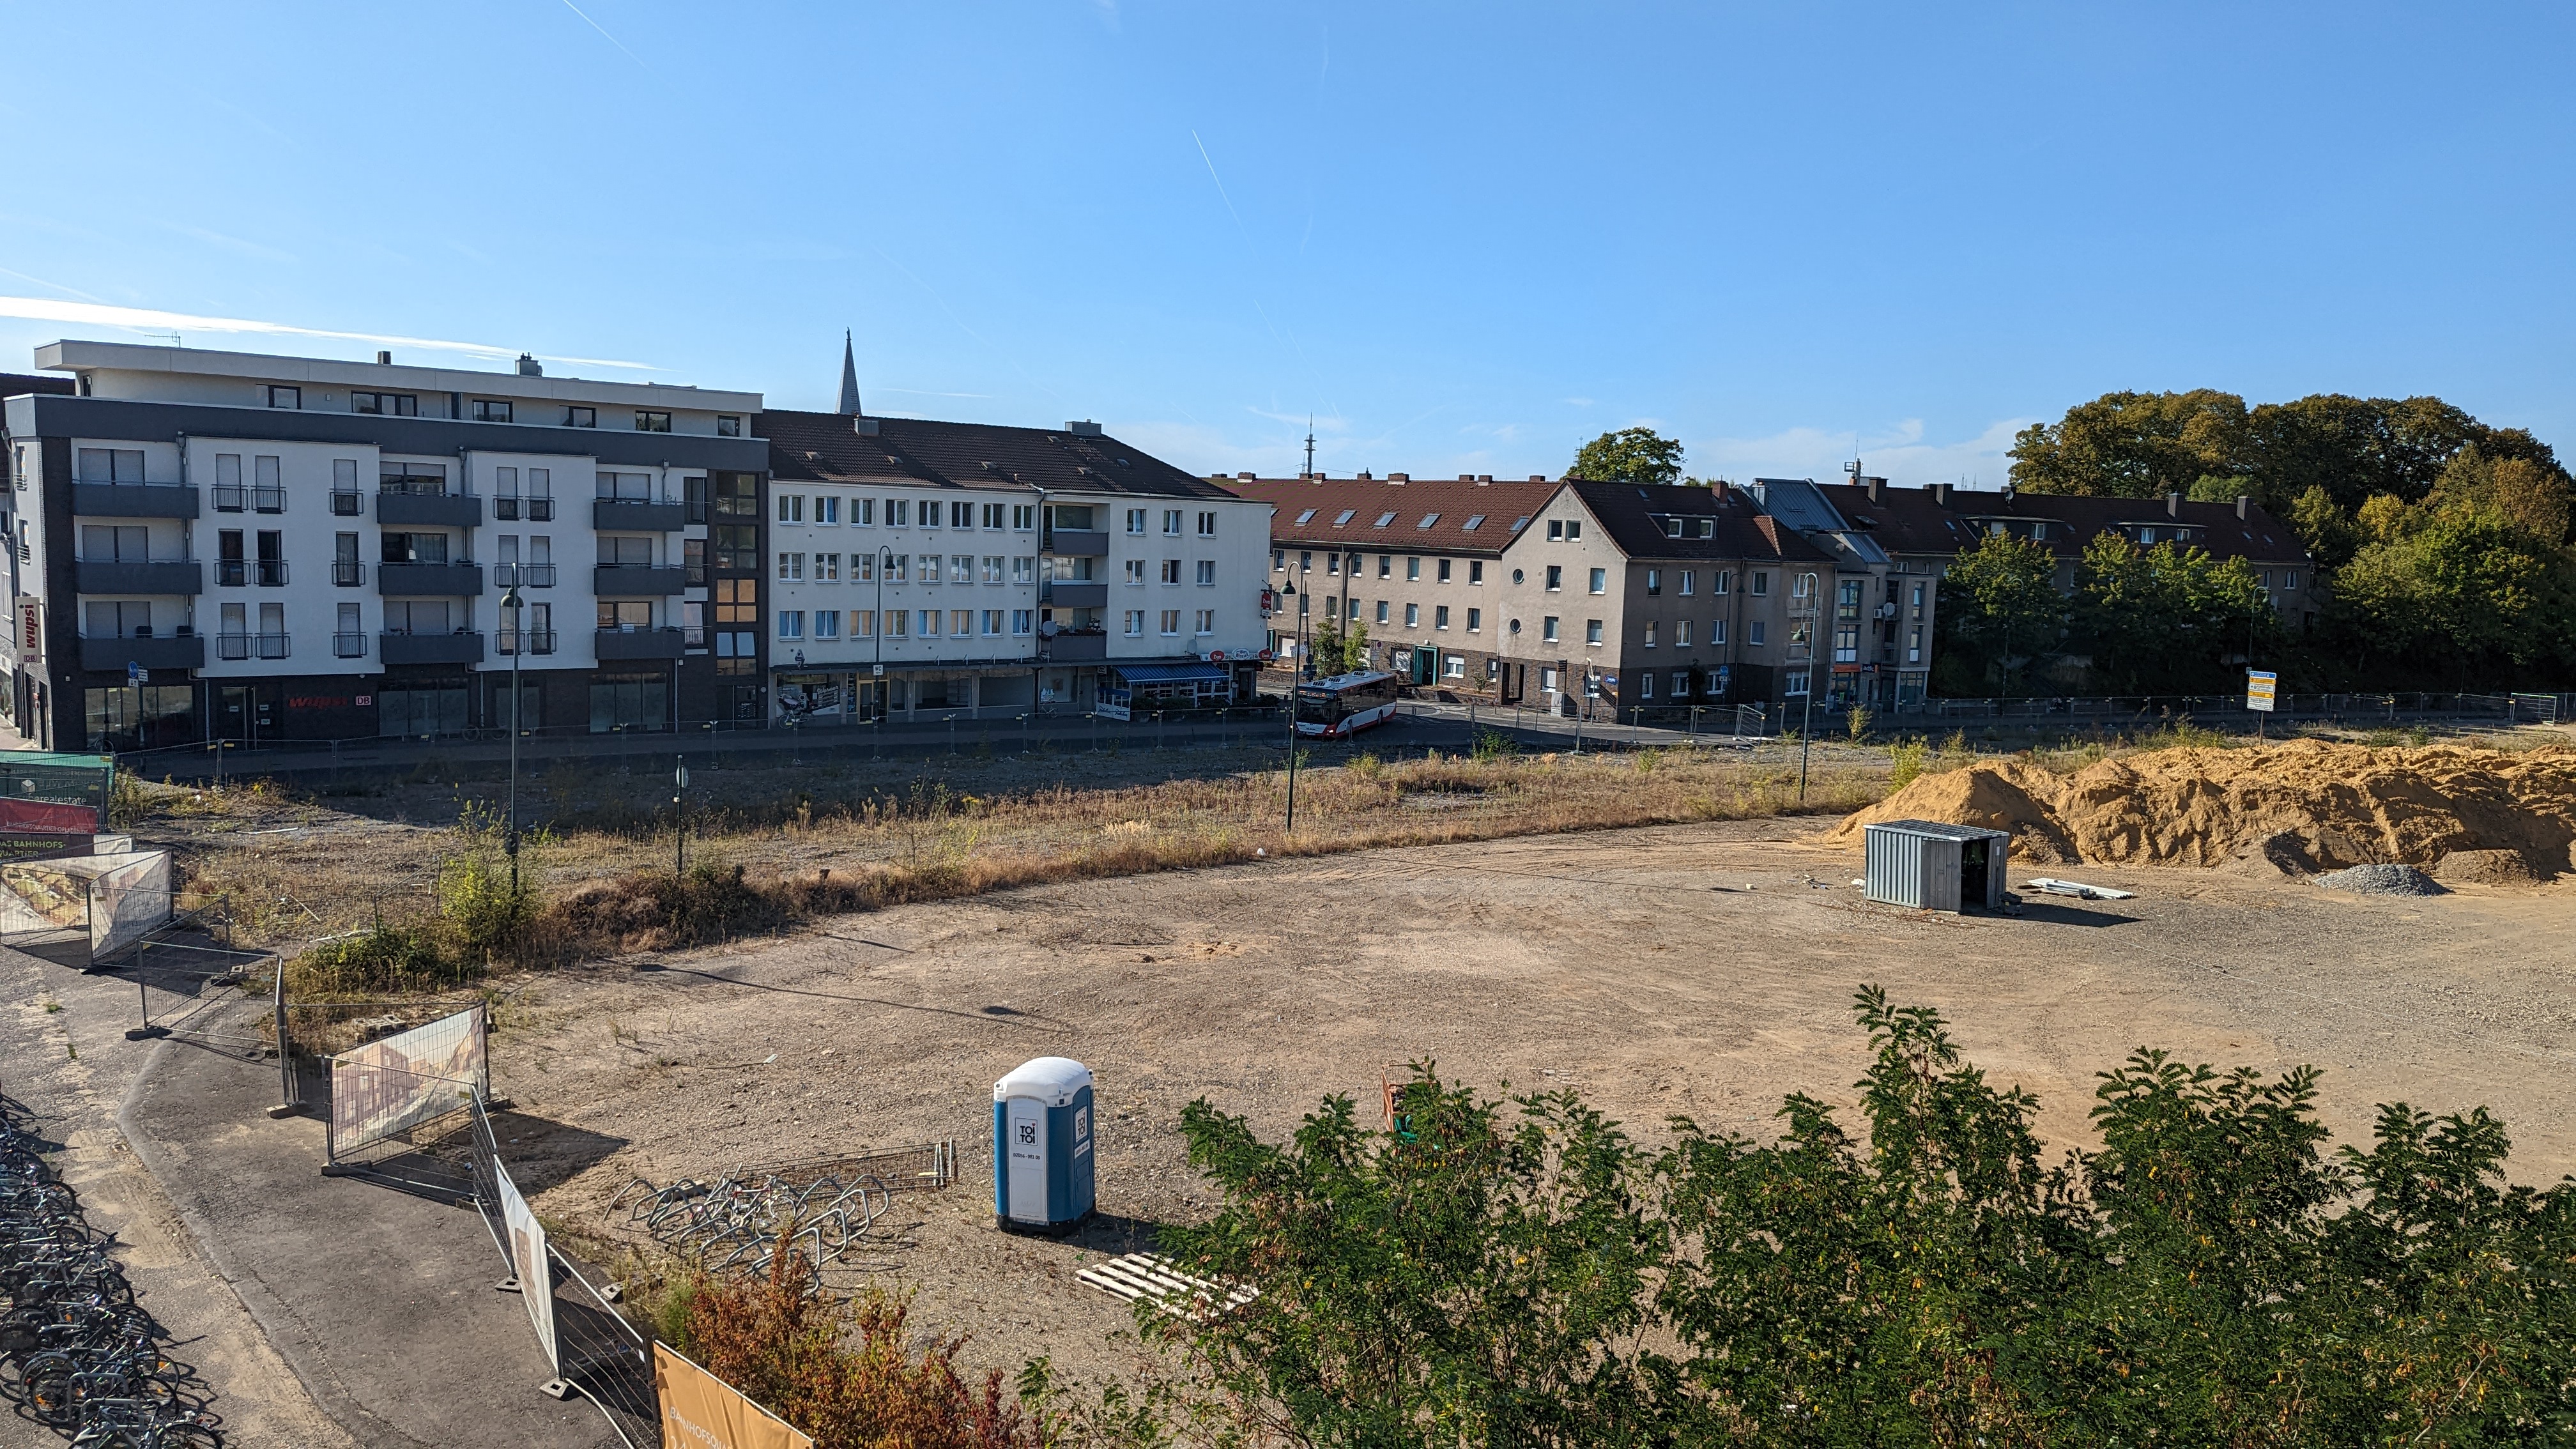 Aufnahme von der Bahnhofsbrücke runter zum alten Busbahnhof in Opladen. Der alte Busbahnhof ist entfernt und zu sehen ist eine Baustelle mit Kies und Sandhaufen. Die Baustelle ist von Bauzäunen umzäunt und somit abgesperrt.